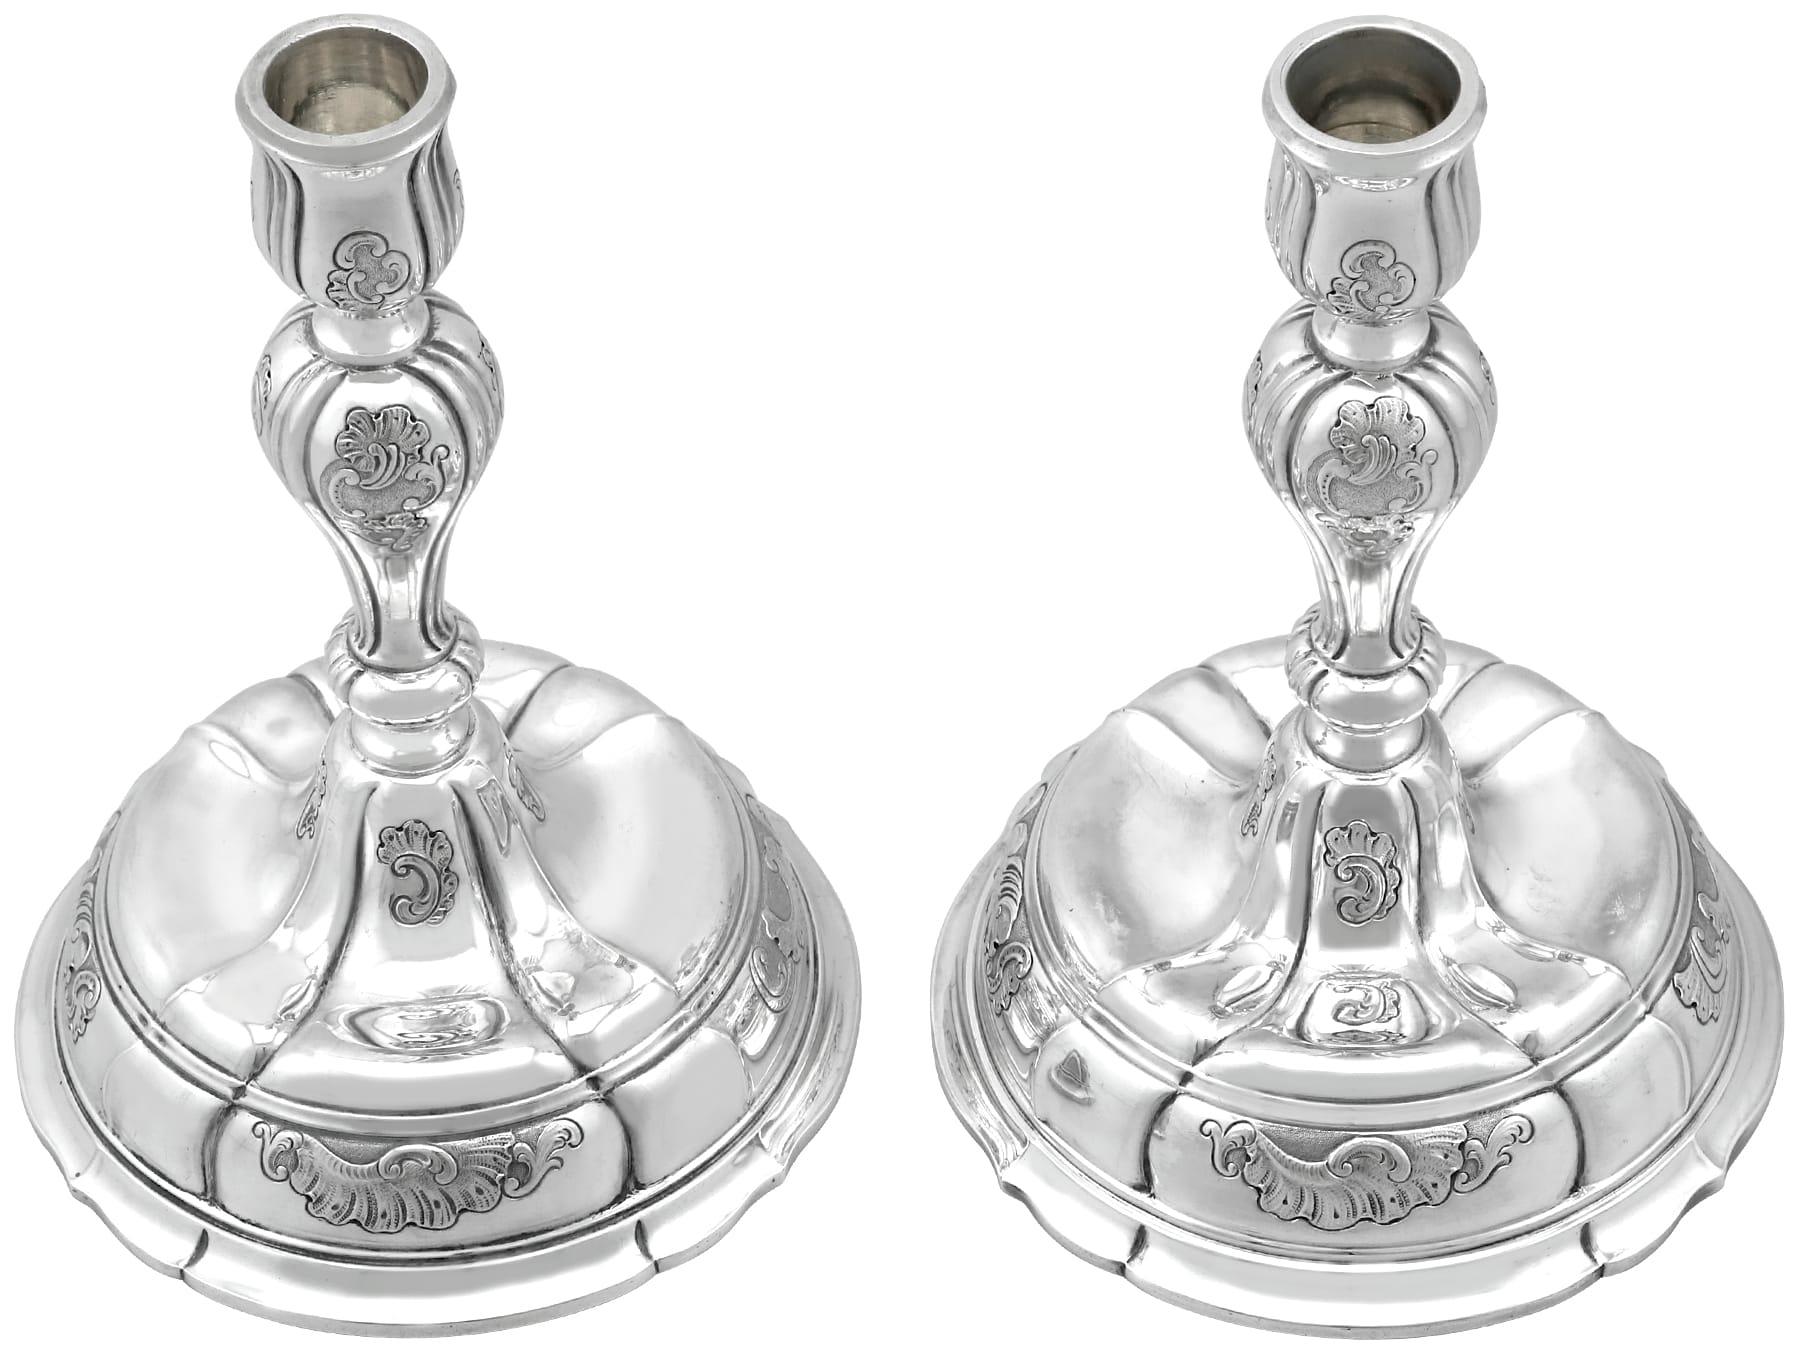 Ein außergewöhnliches, feines und beeindruckendes Paar antiker dänischer Silberleuchter von Georg Jensen; eine Ergänzung zu unserer Sammlung von Ziersilberwaren.

Diese außergewöhnlichen antiken dänischen Silberkerzenhalter haben eine